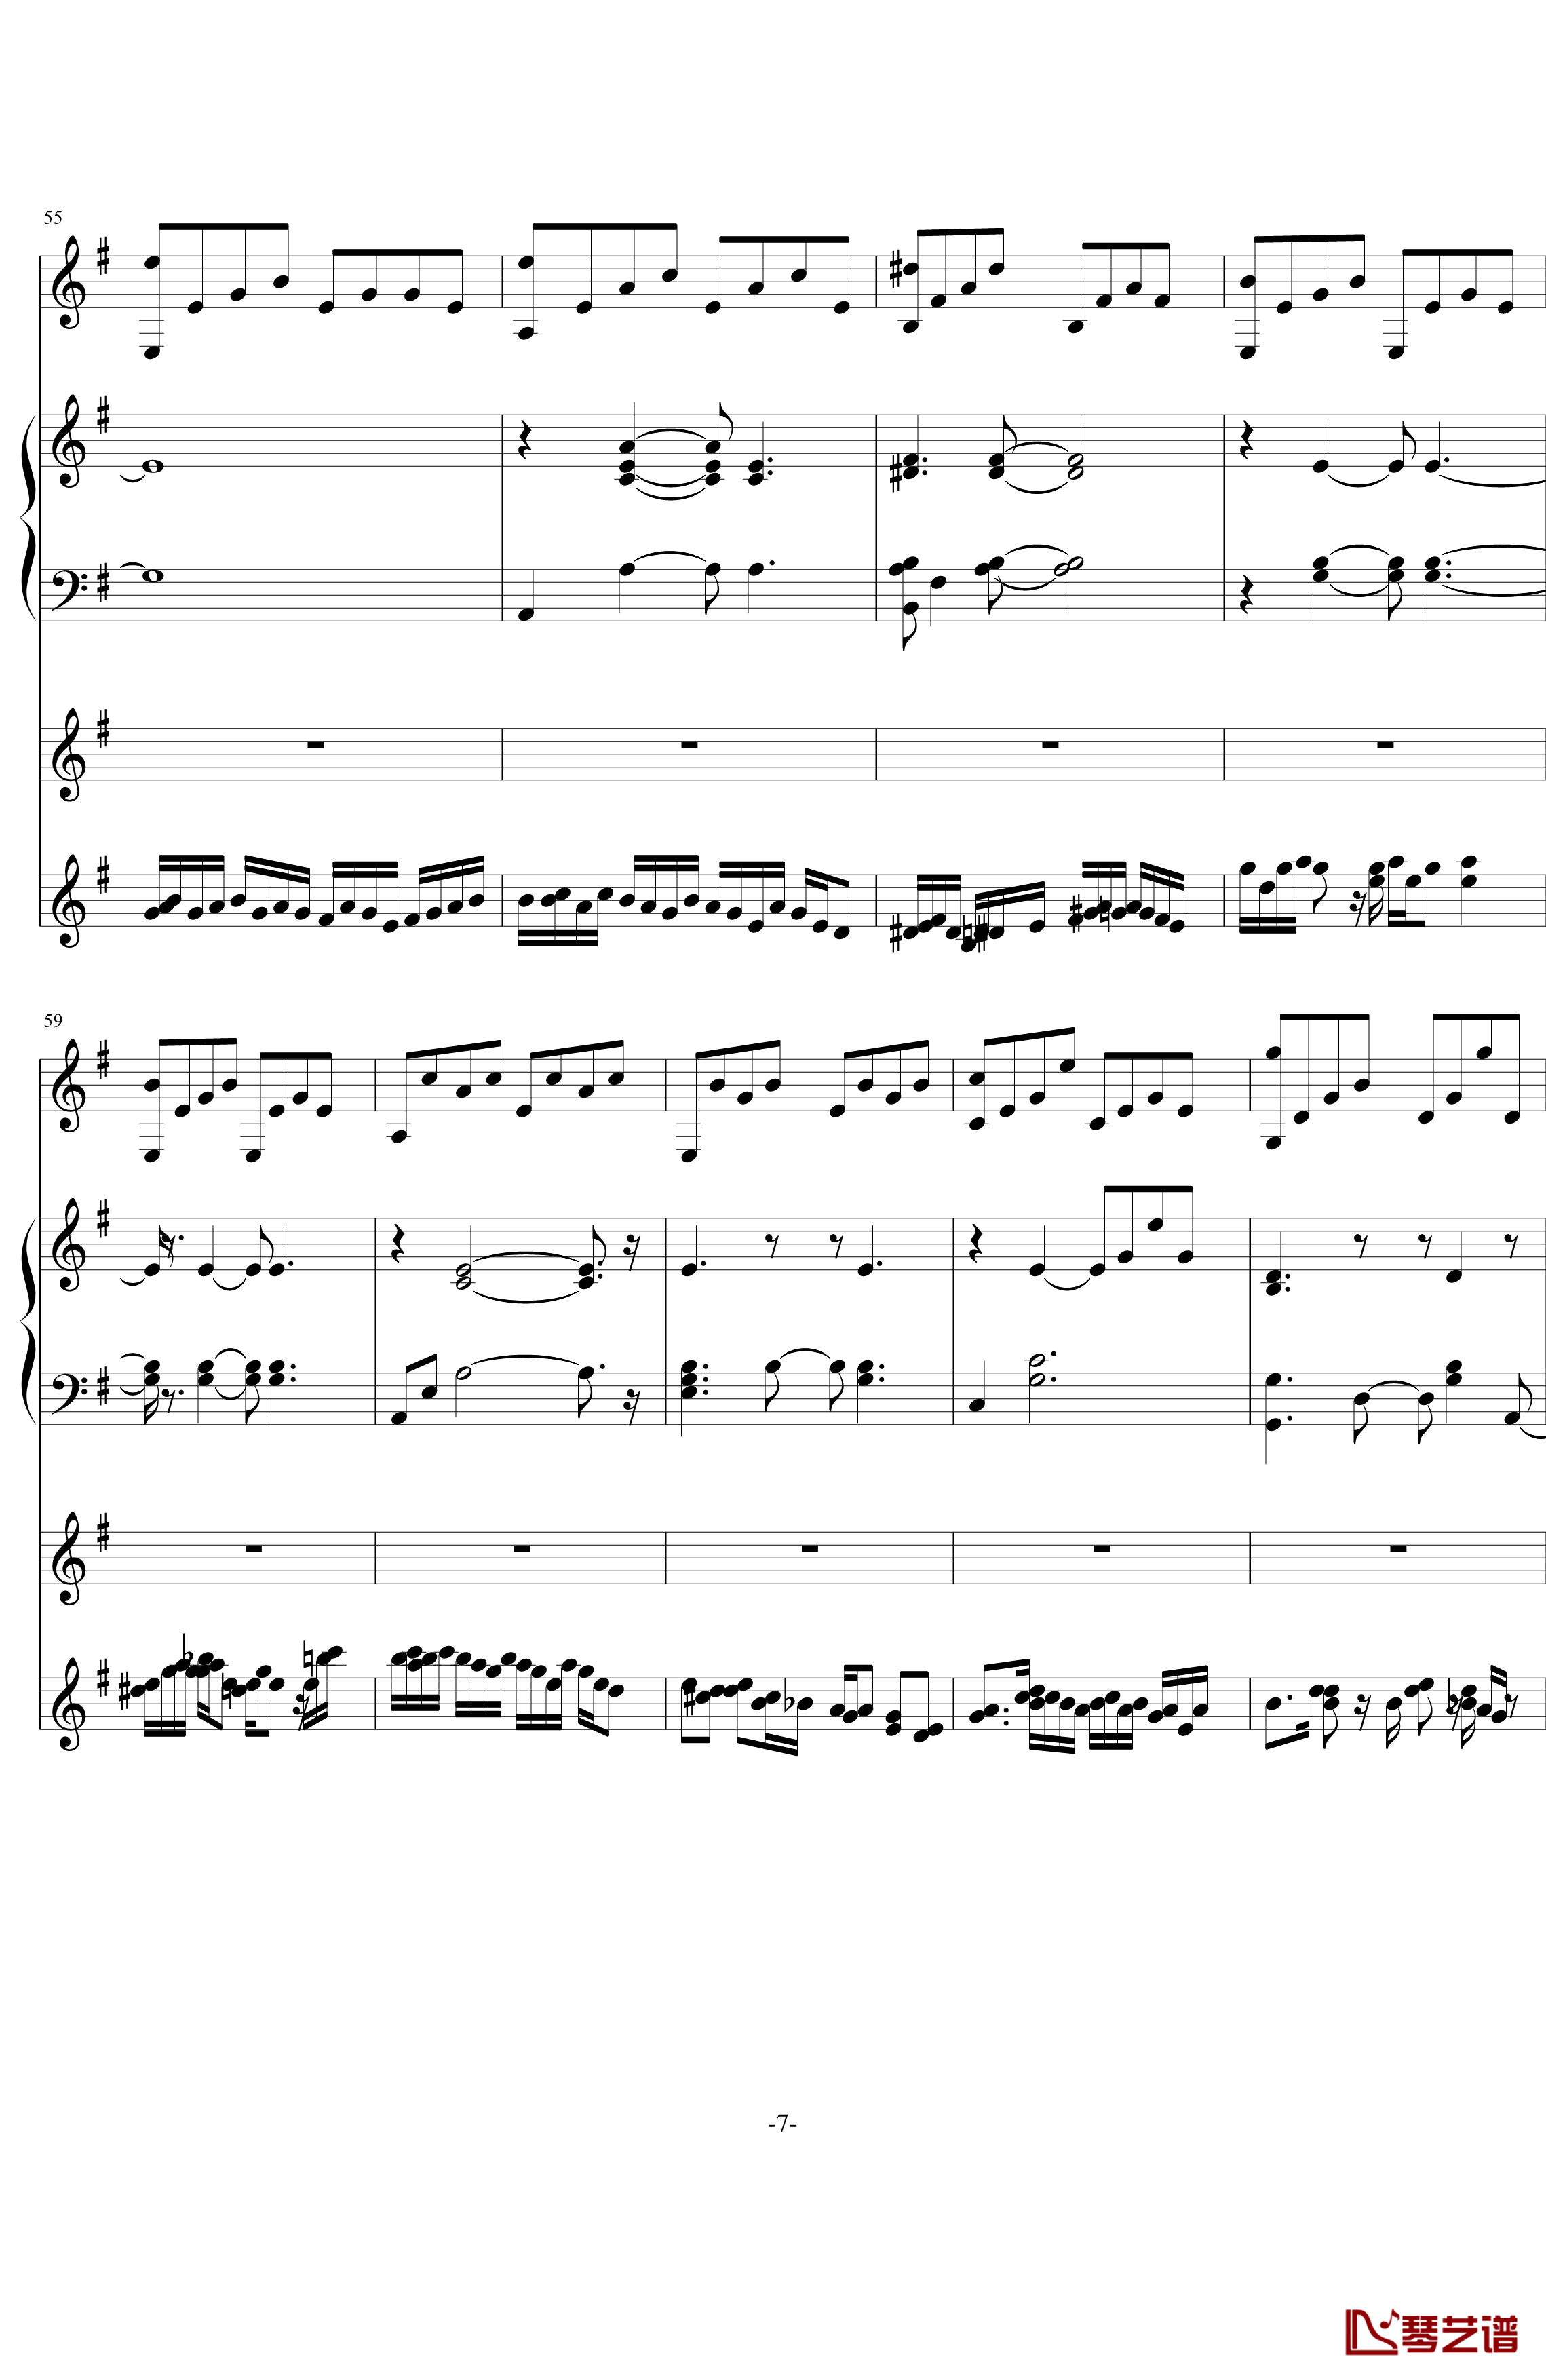 中提琴协奏版钢琴谱-含有钢琴独奏-老奠